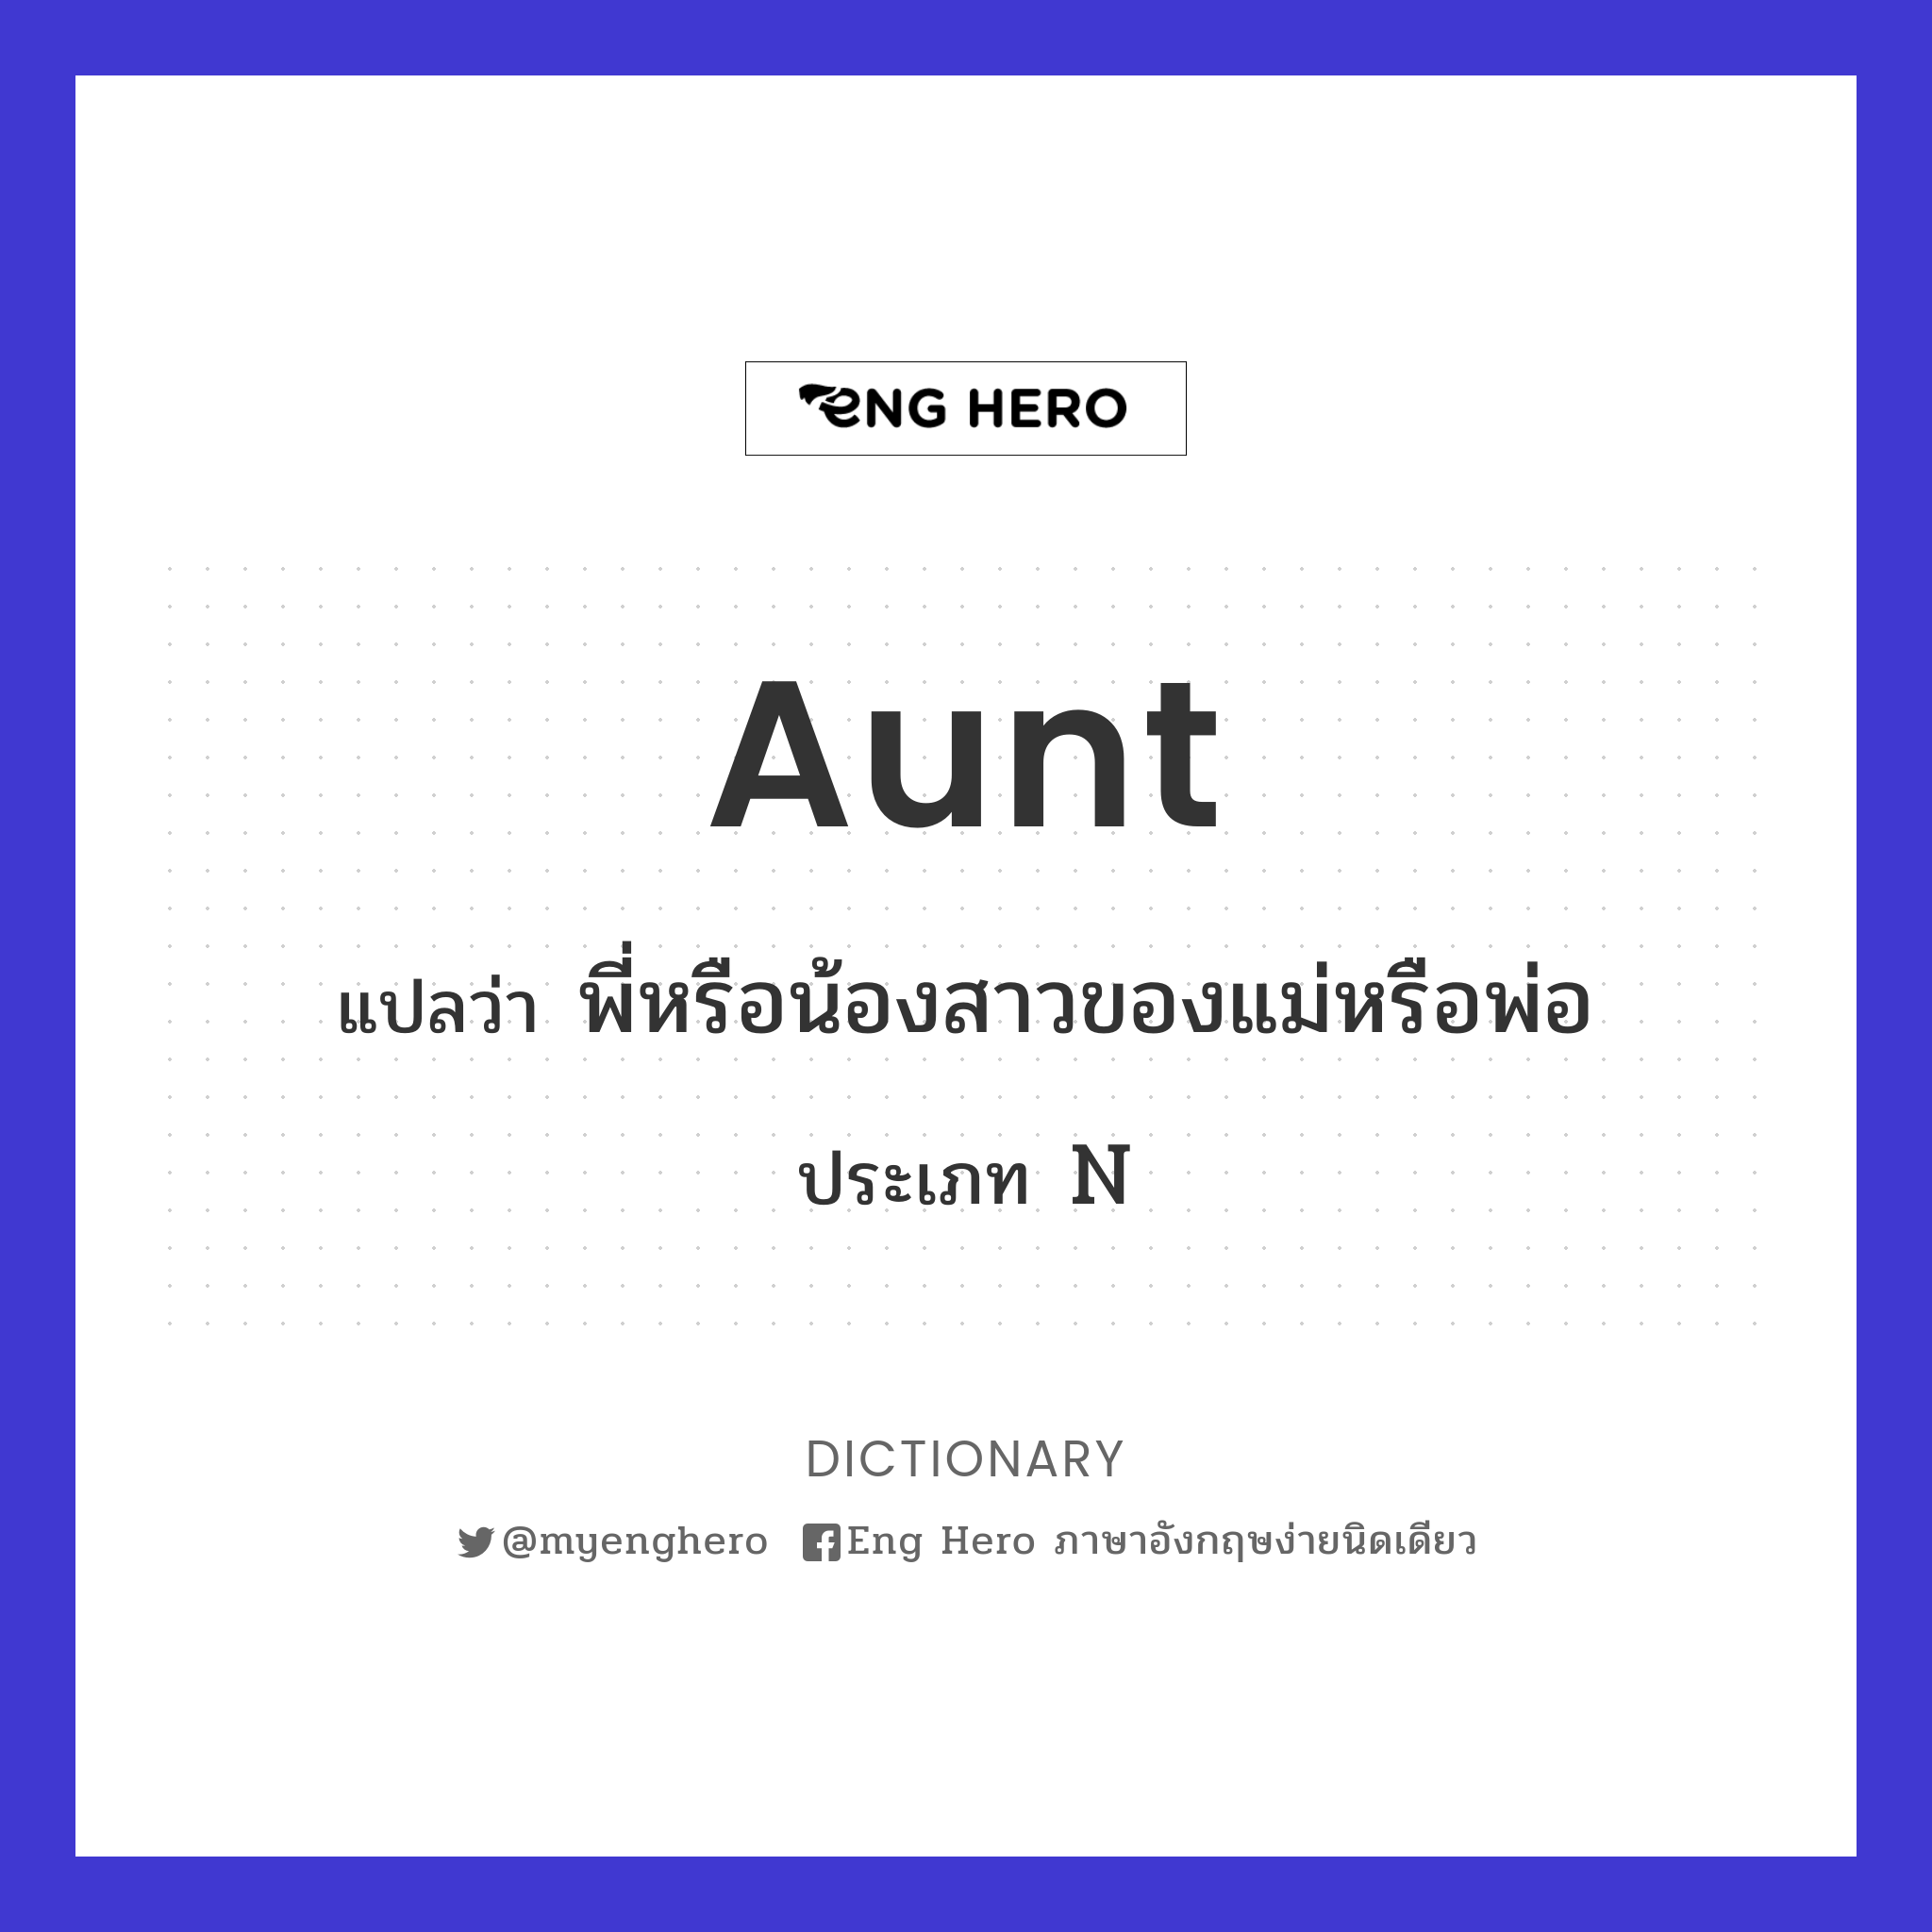 aunt